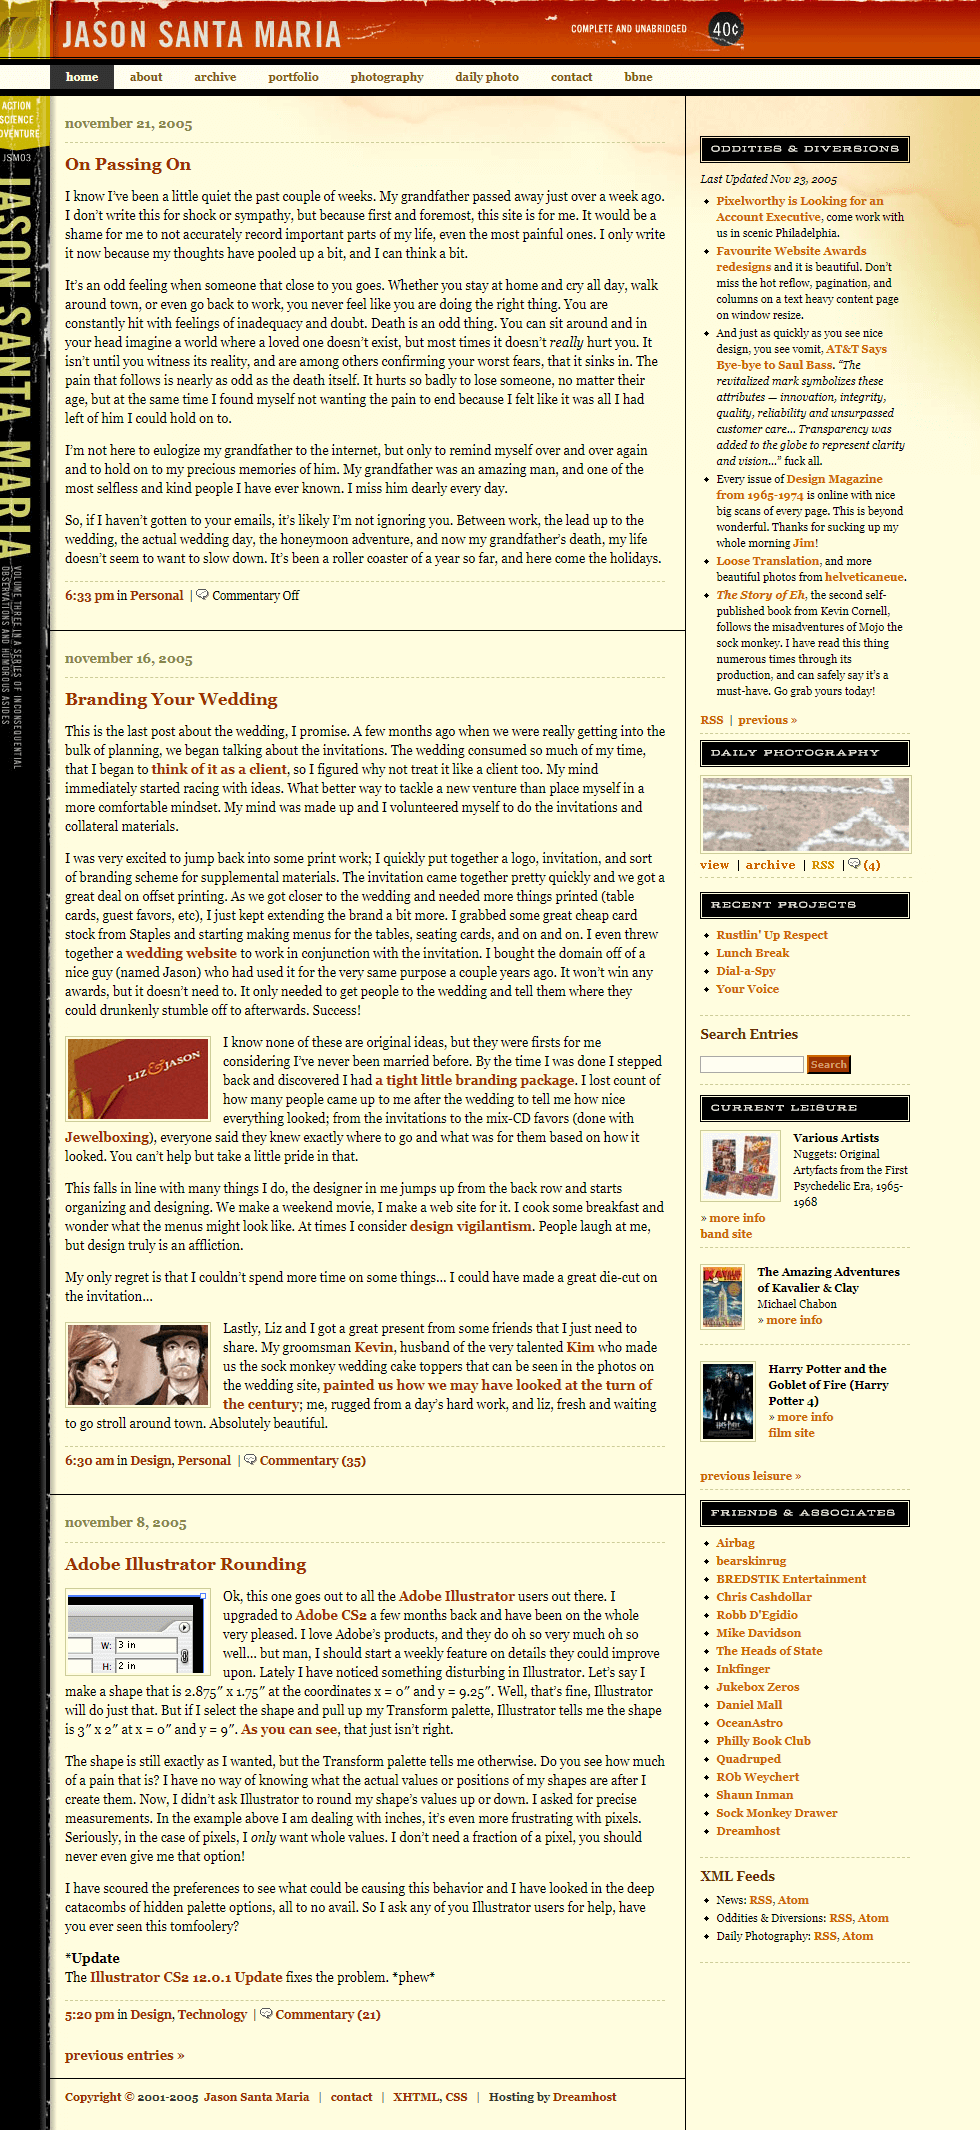 Jason Santa Maria website in 2005